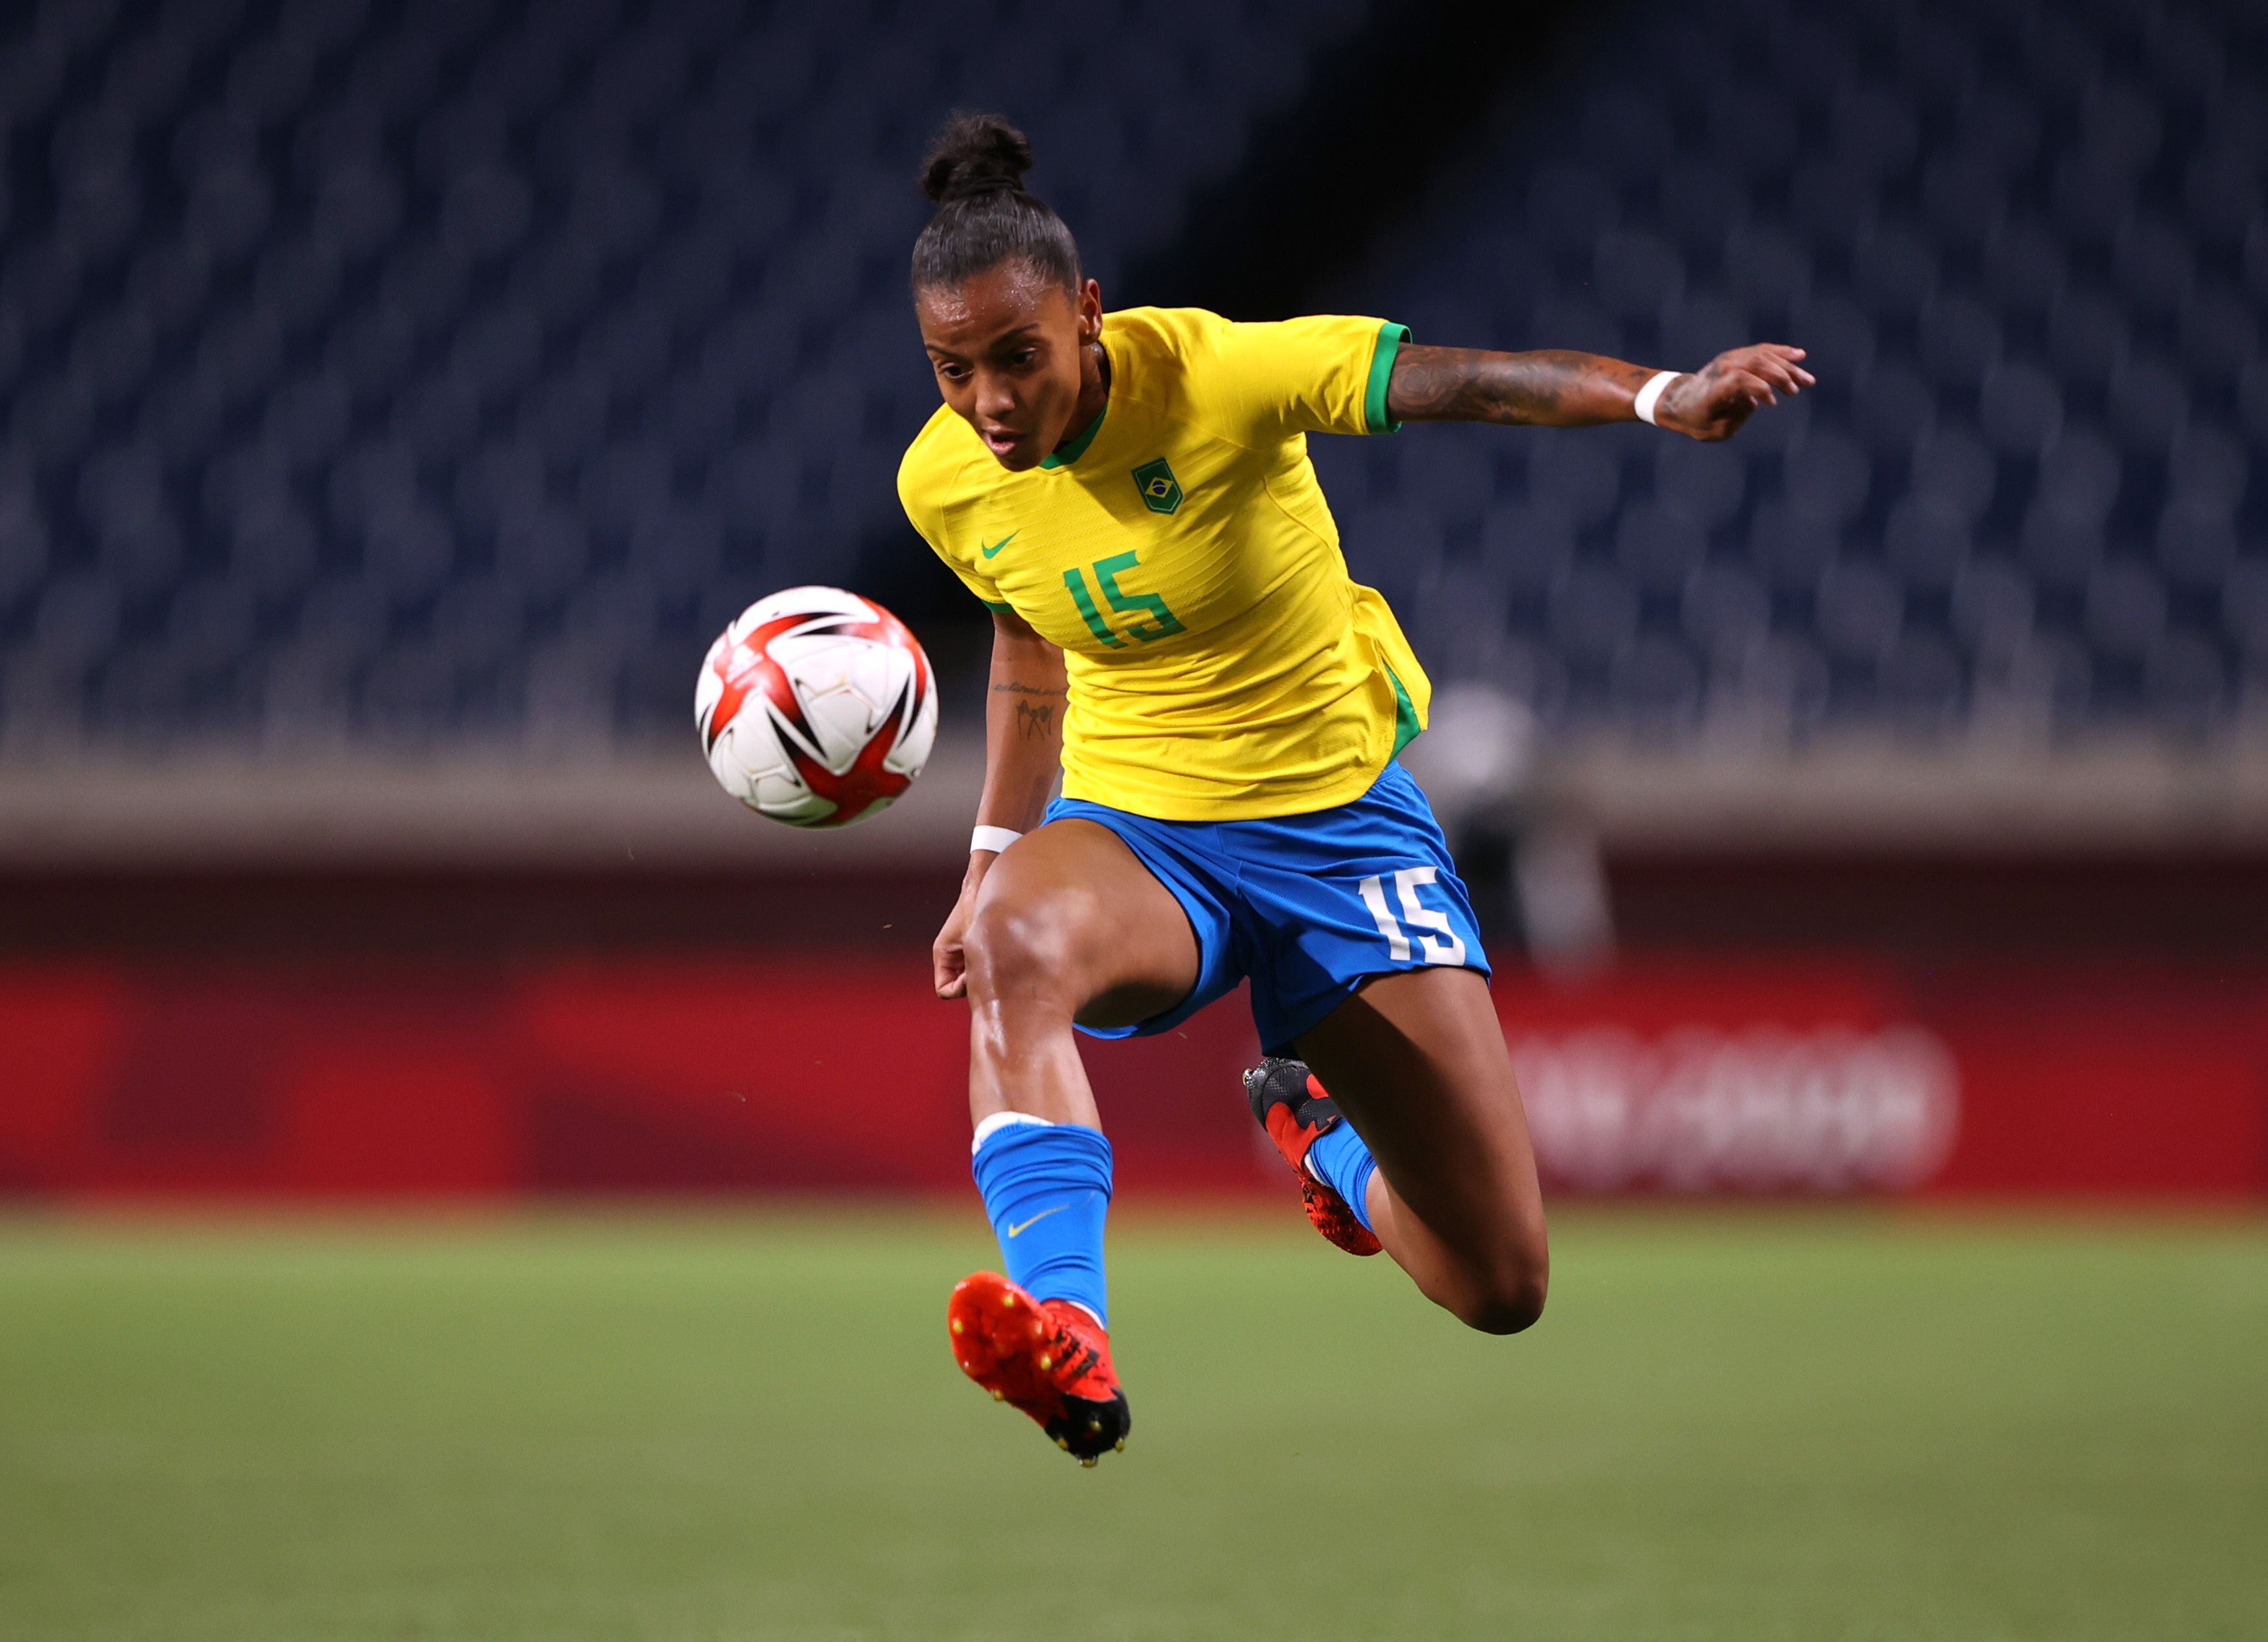 La explosiva goleadora seleccionó a Neymar y Marta como sus principales referentes en el deporte (Foto: Reuters)